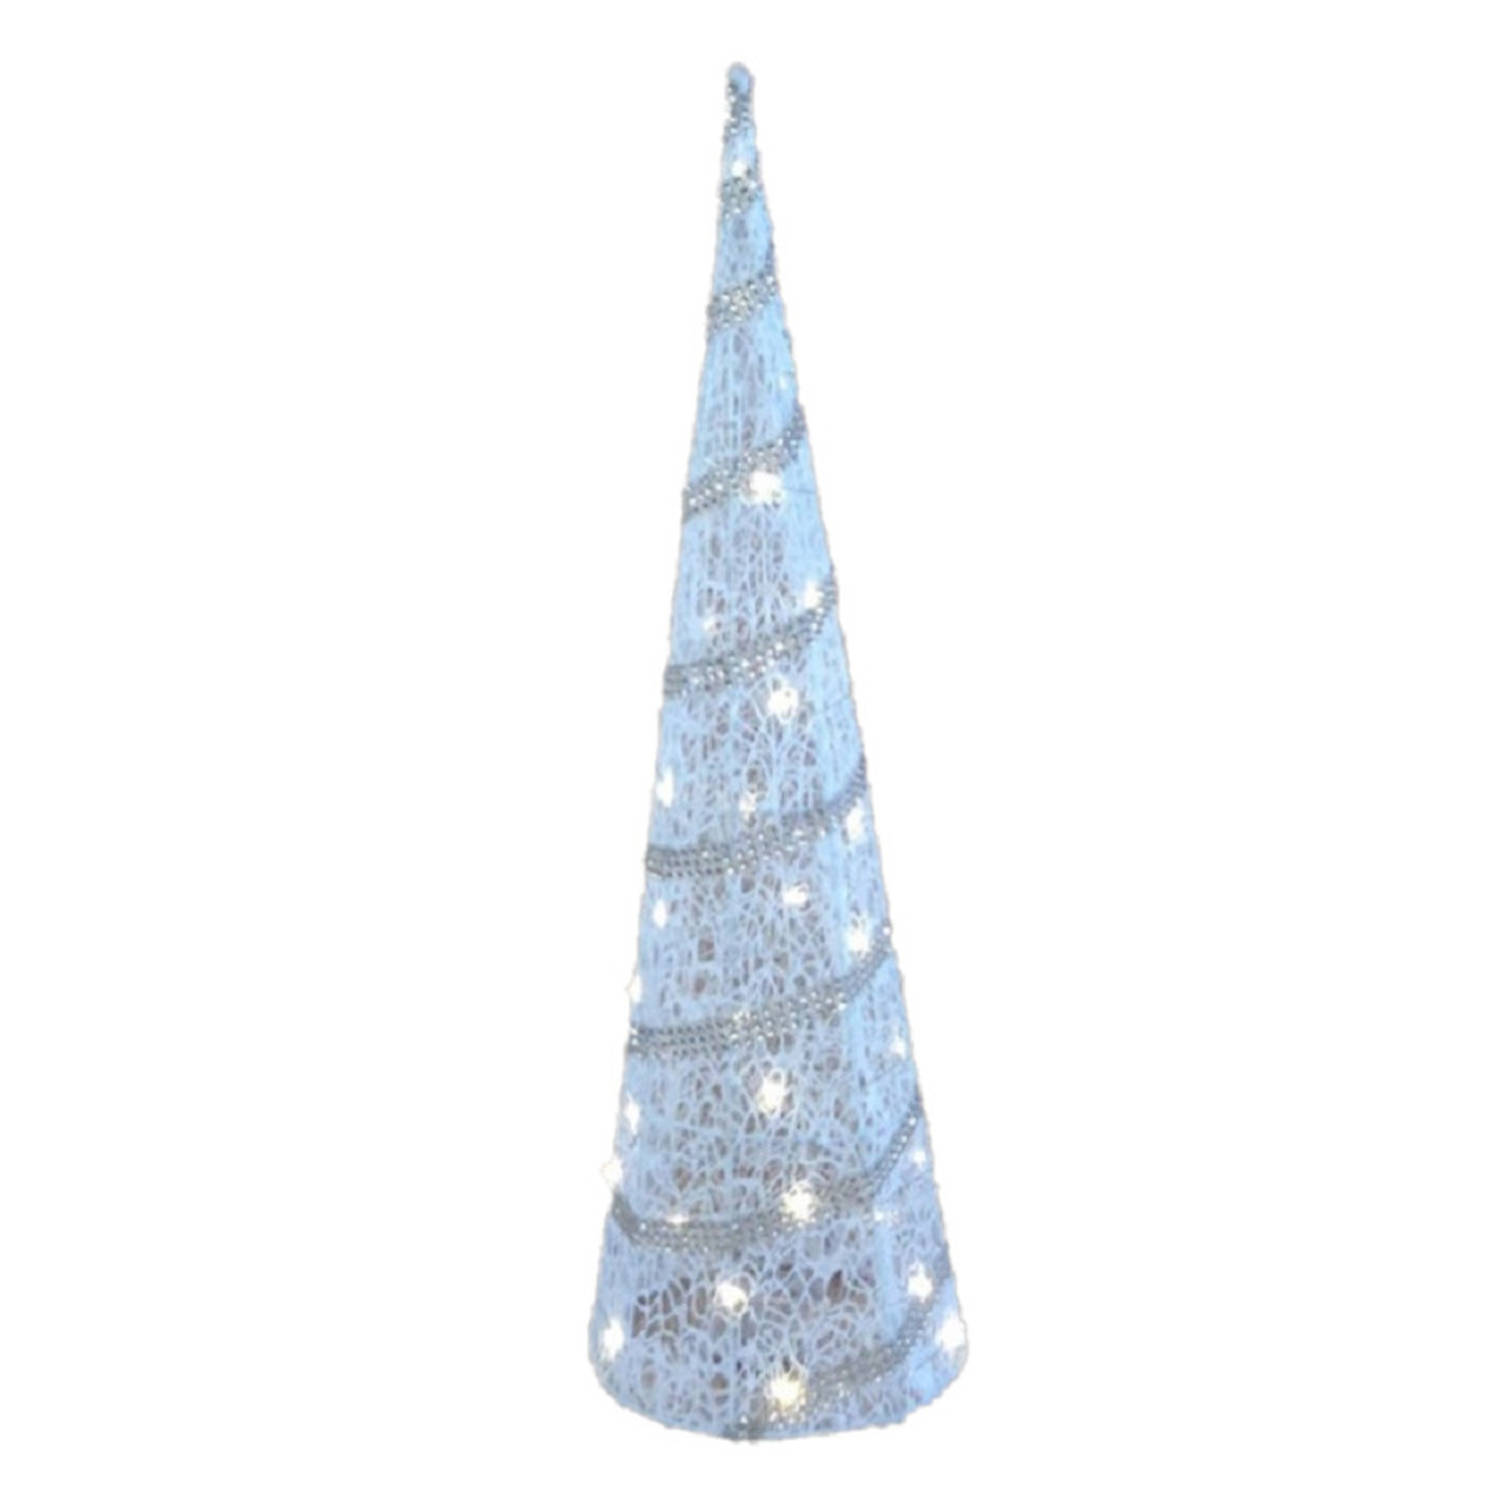 LED piramide kerstboom H79 cm wit kunststof kerstverlichting kerstverlichting figuur